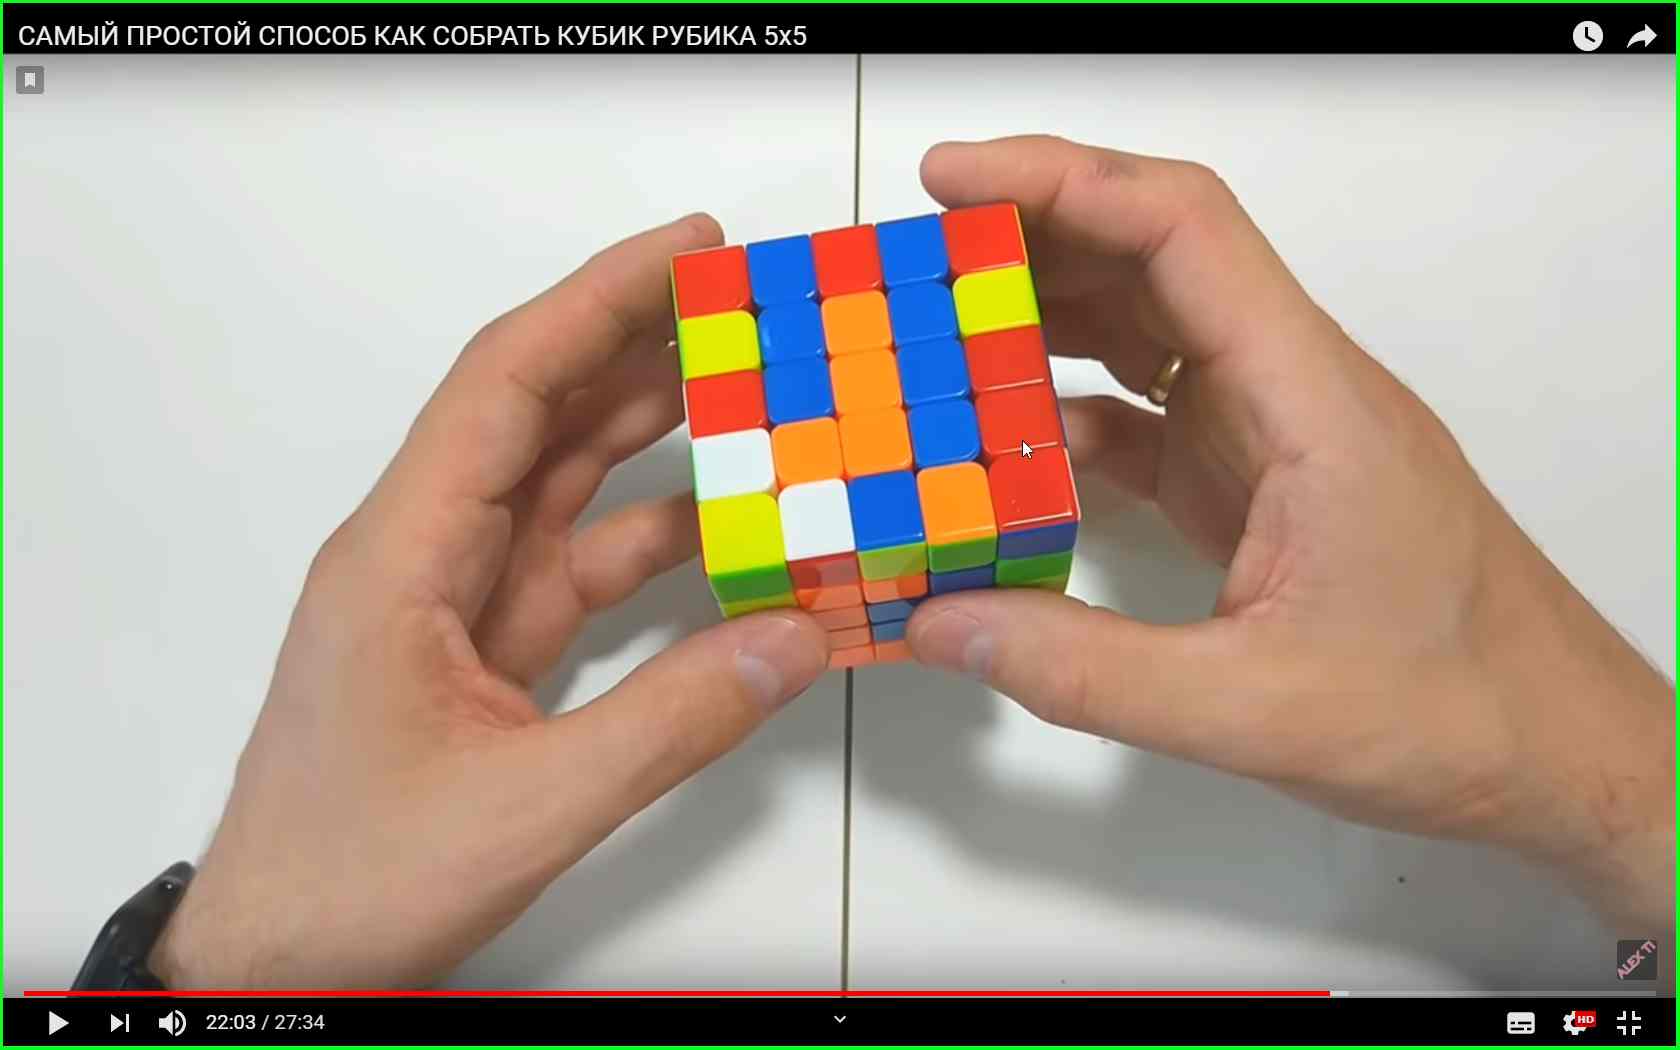 Кубик 5х5 схема. Кубик Рубика 5x5 паритеты. Кубик 5х5 паритеты. Кубик рубик 5х5 схема. Кубик рубик 5х5 Паритет.